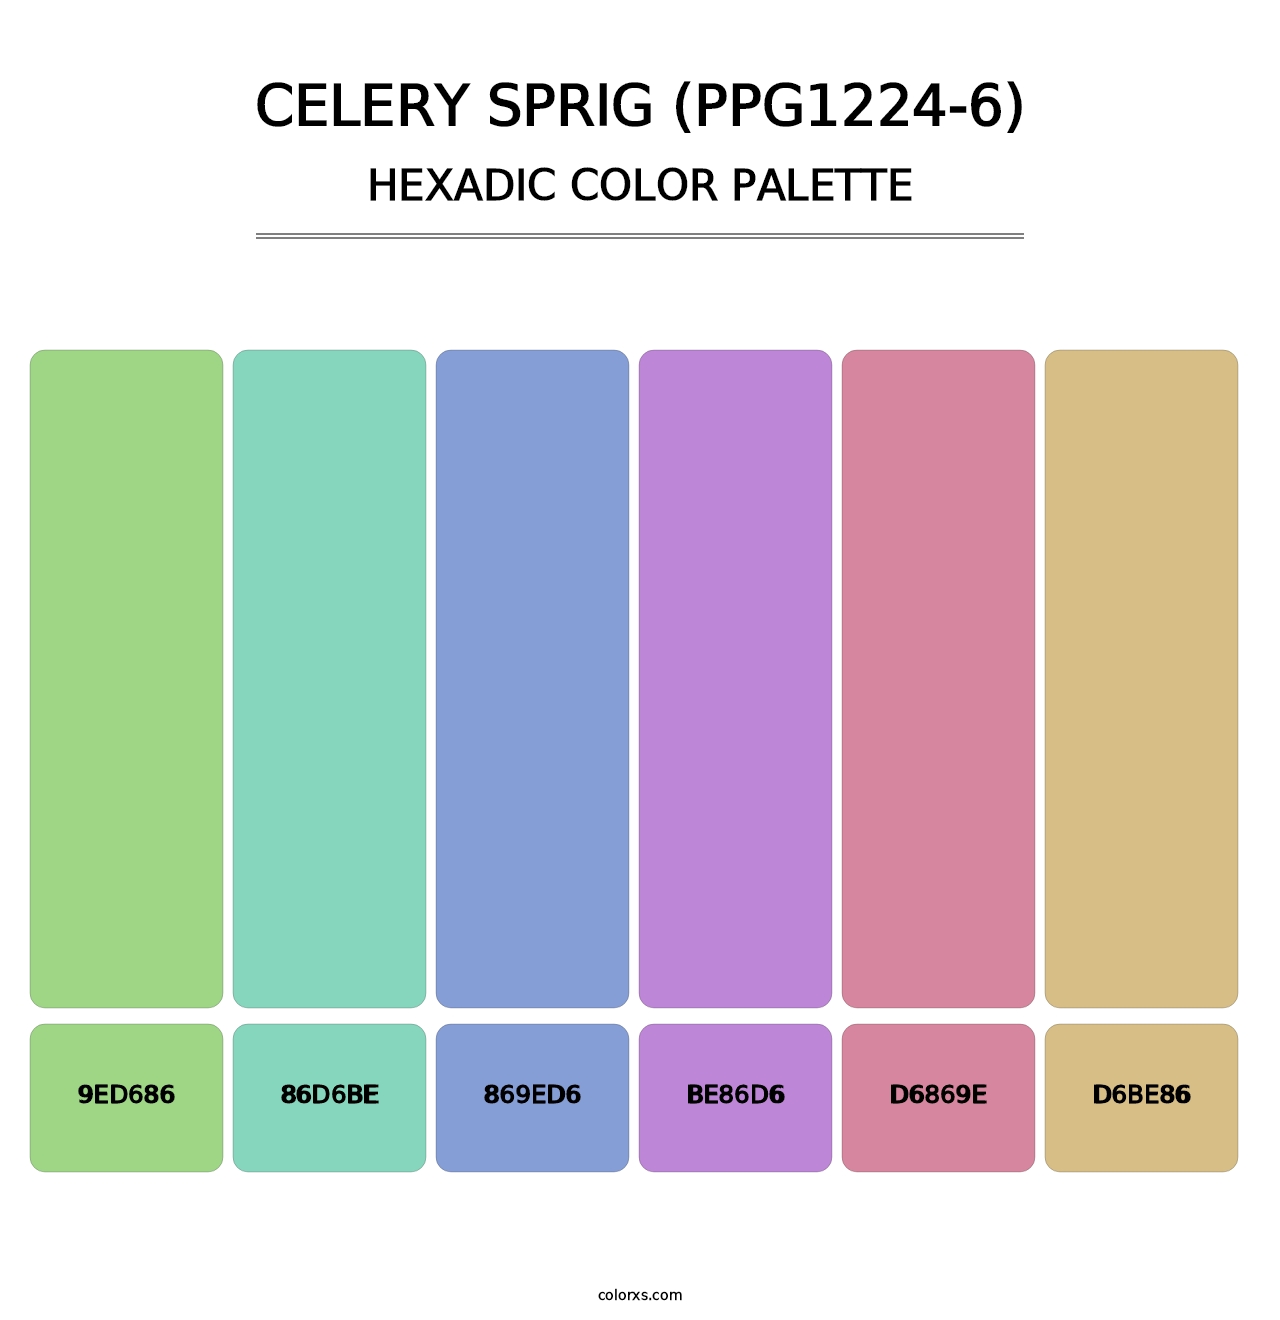 Celery Sprig (PPG1224-6) - Hexadic Color Palette